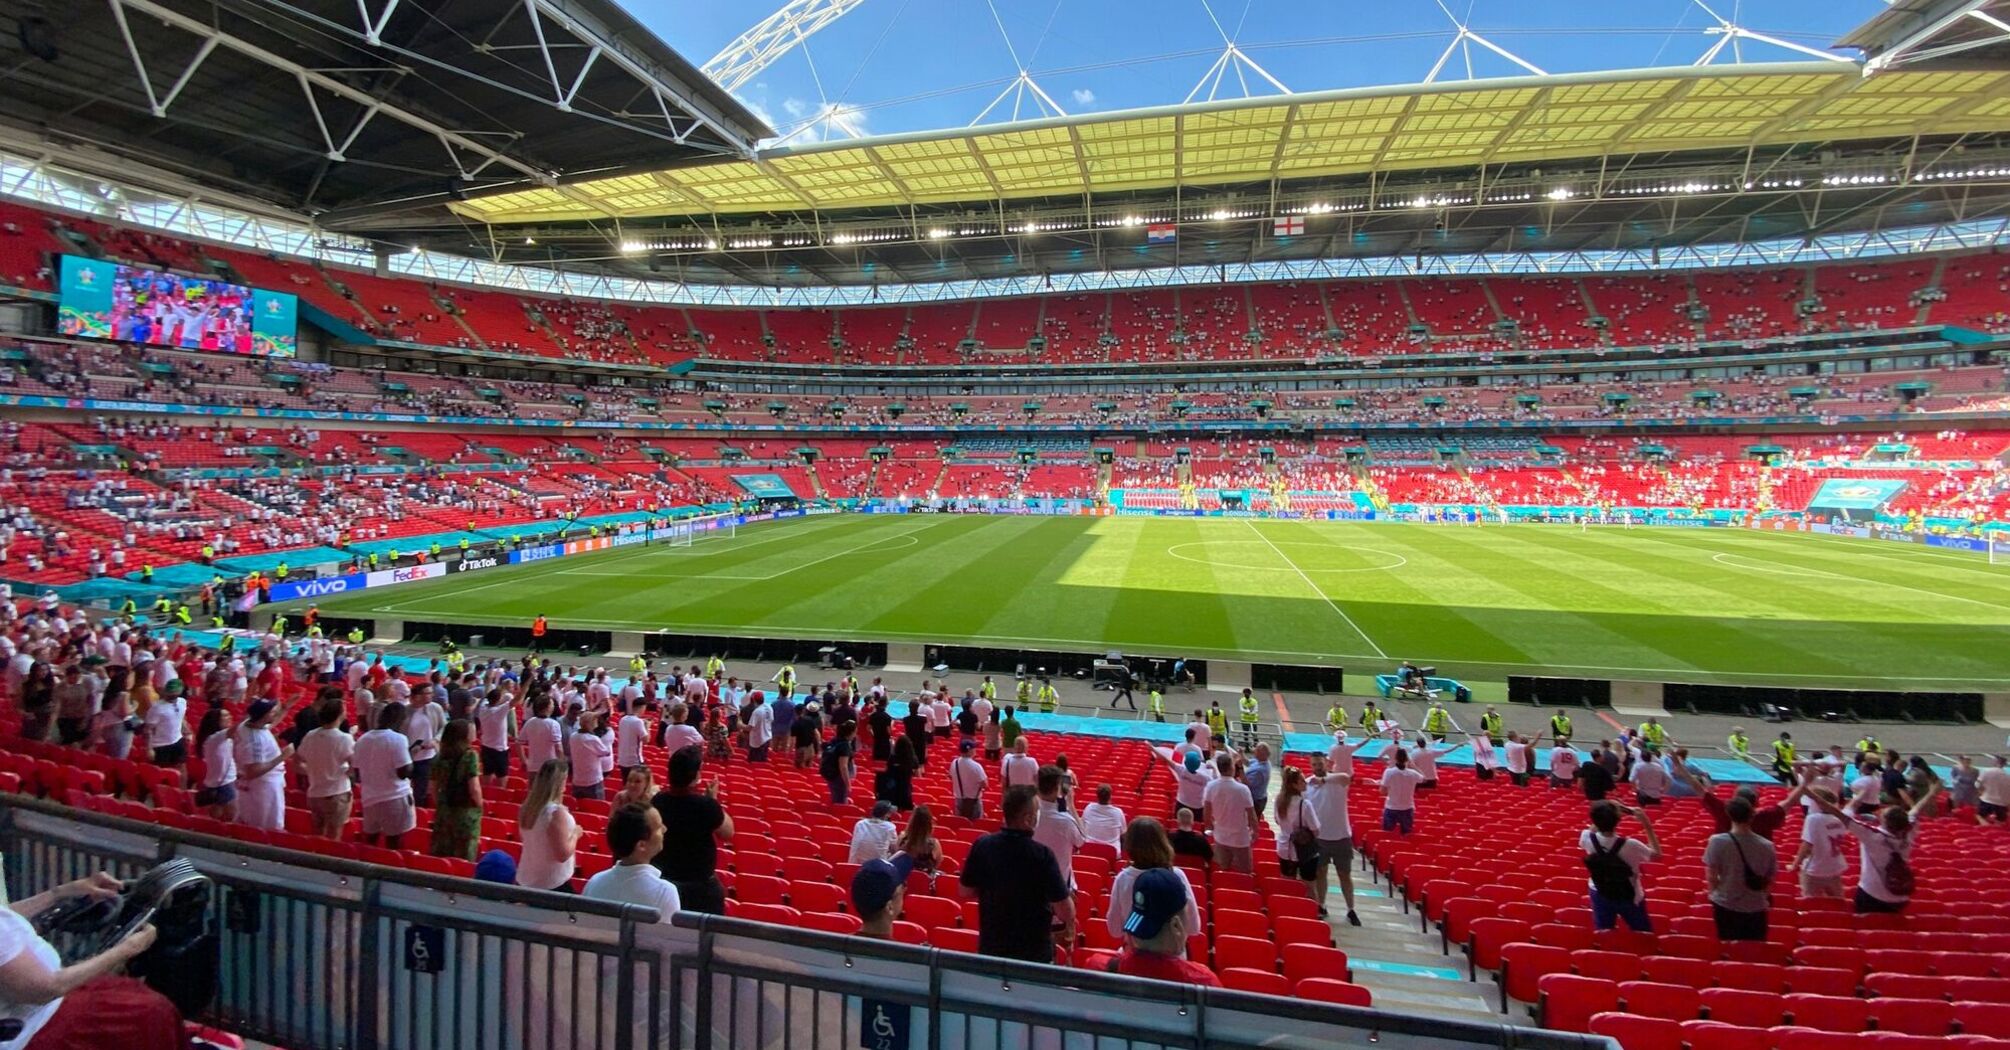 Wembley Stadium during a football match